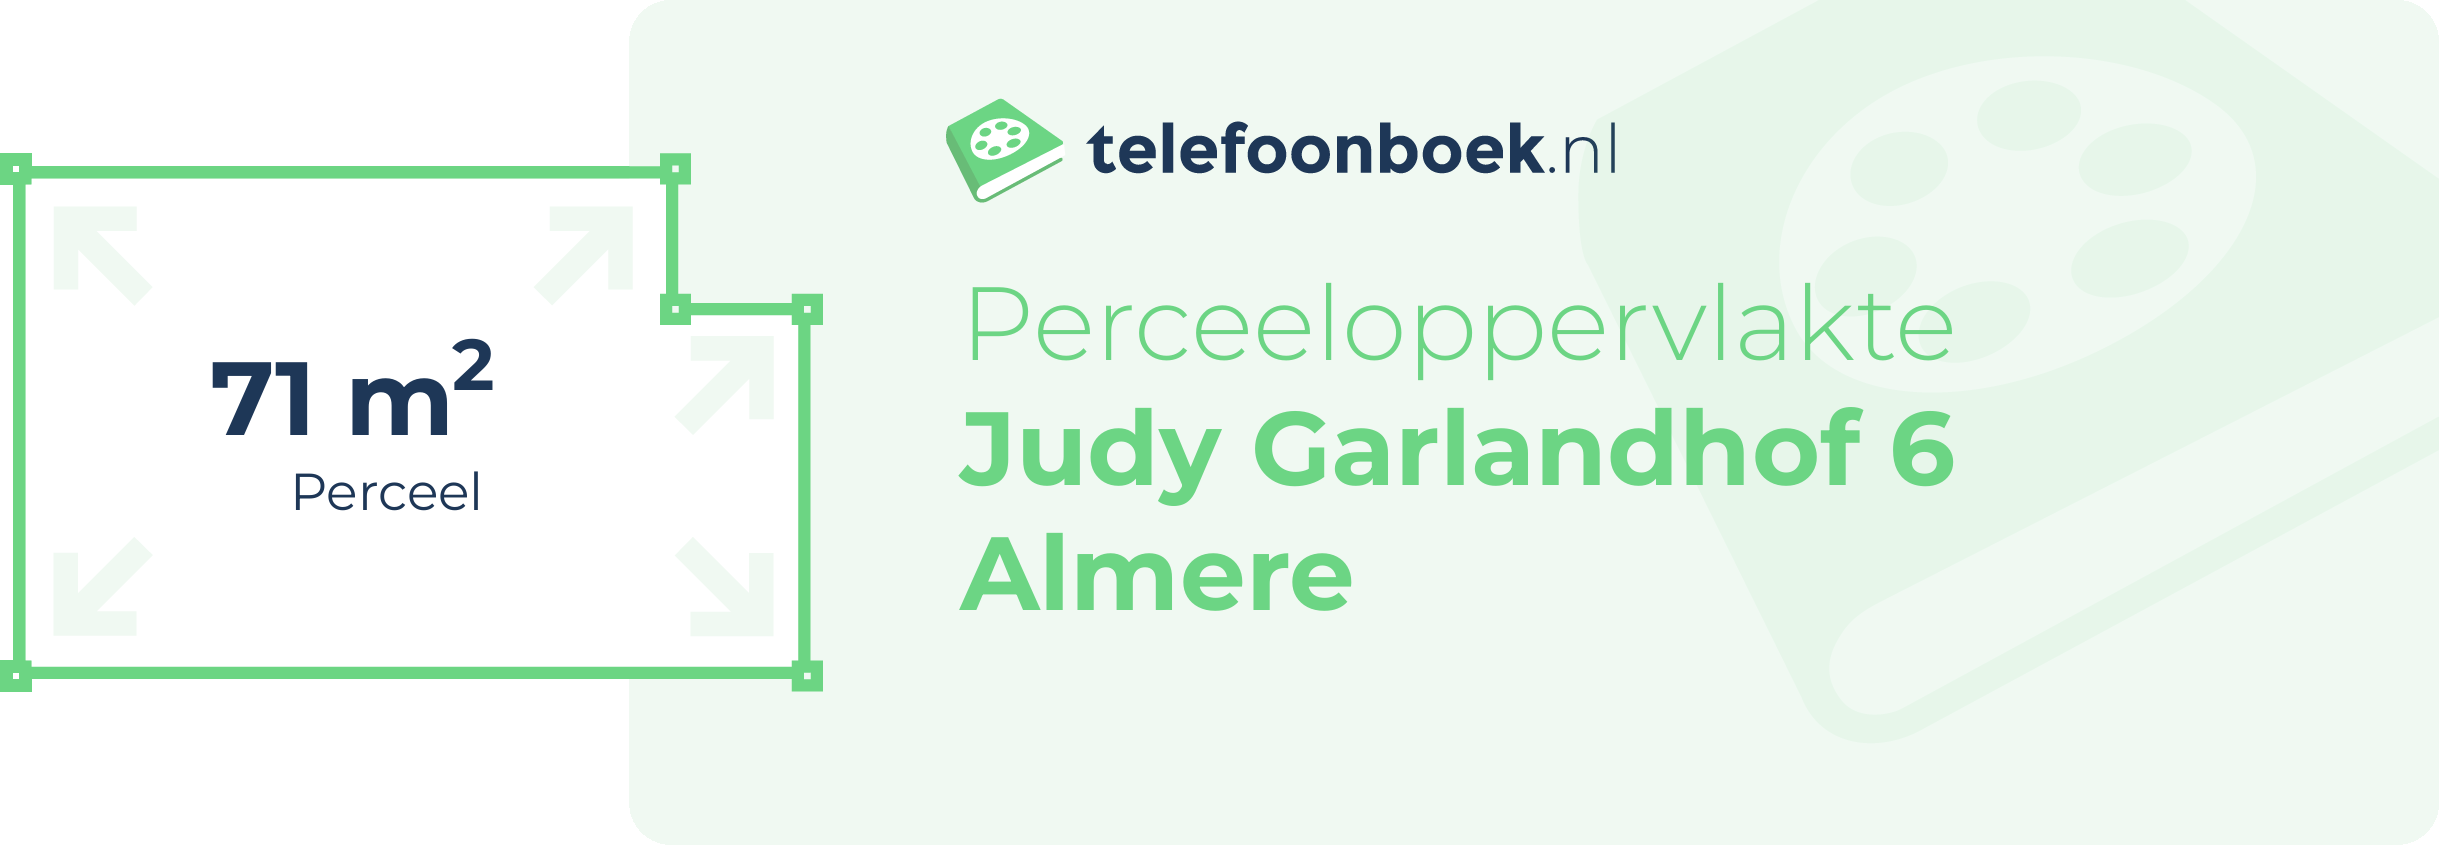 Perceeloppervlakte Judy Garlandhof 6 Almere